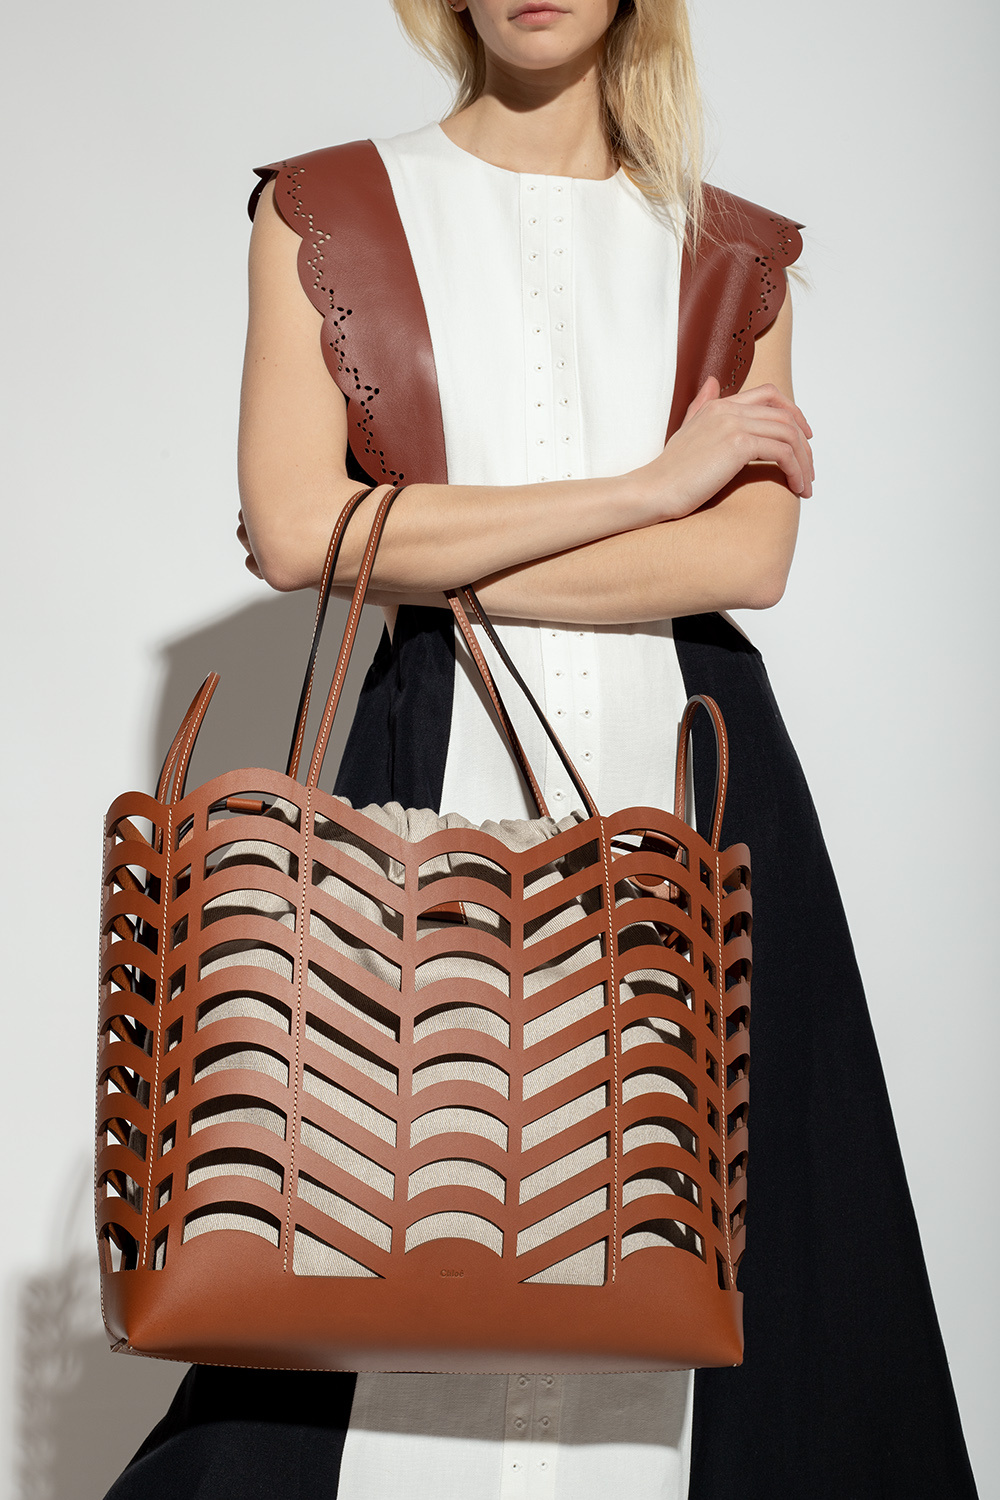 Chloé ‘Kayan’ shopper bag